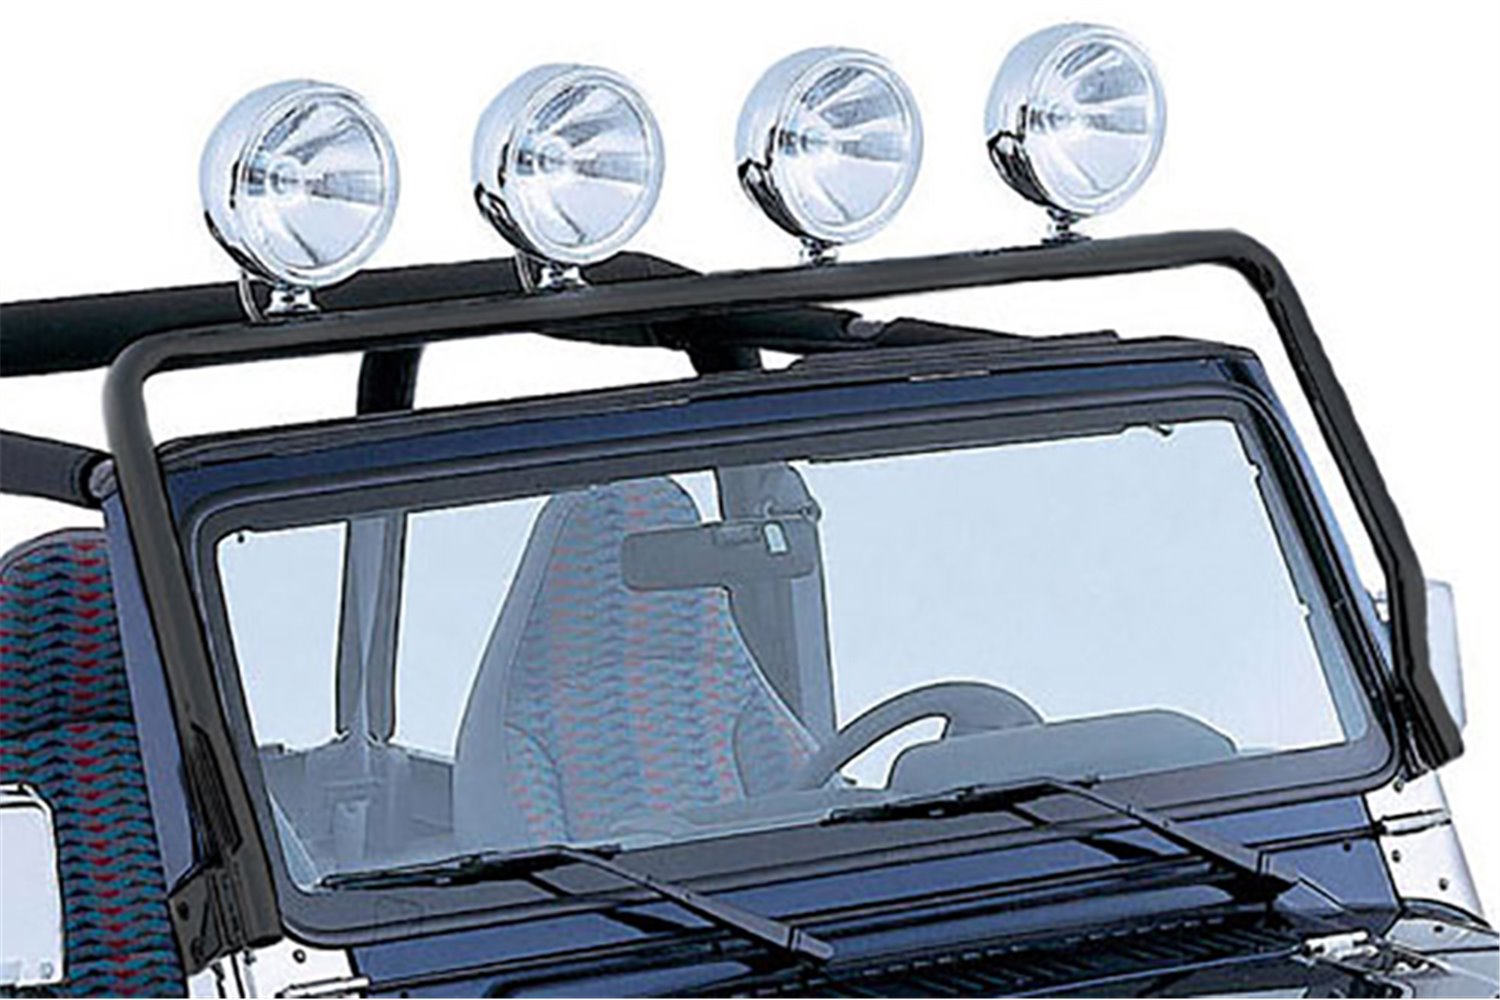 Light Bar, Full Frame, Black : 76-86 CJ, 87-95 Jeep Wrangler YJ